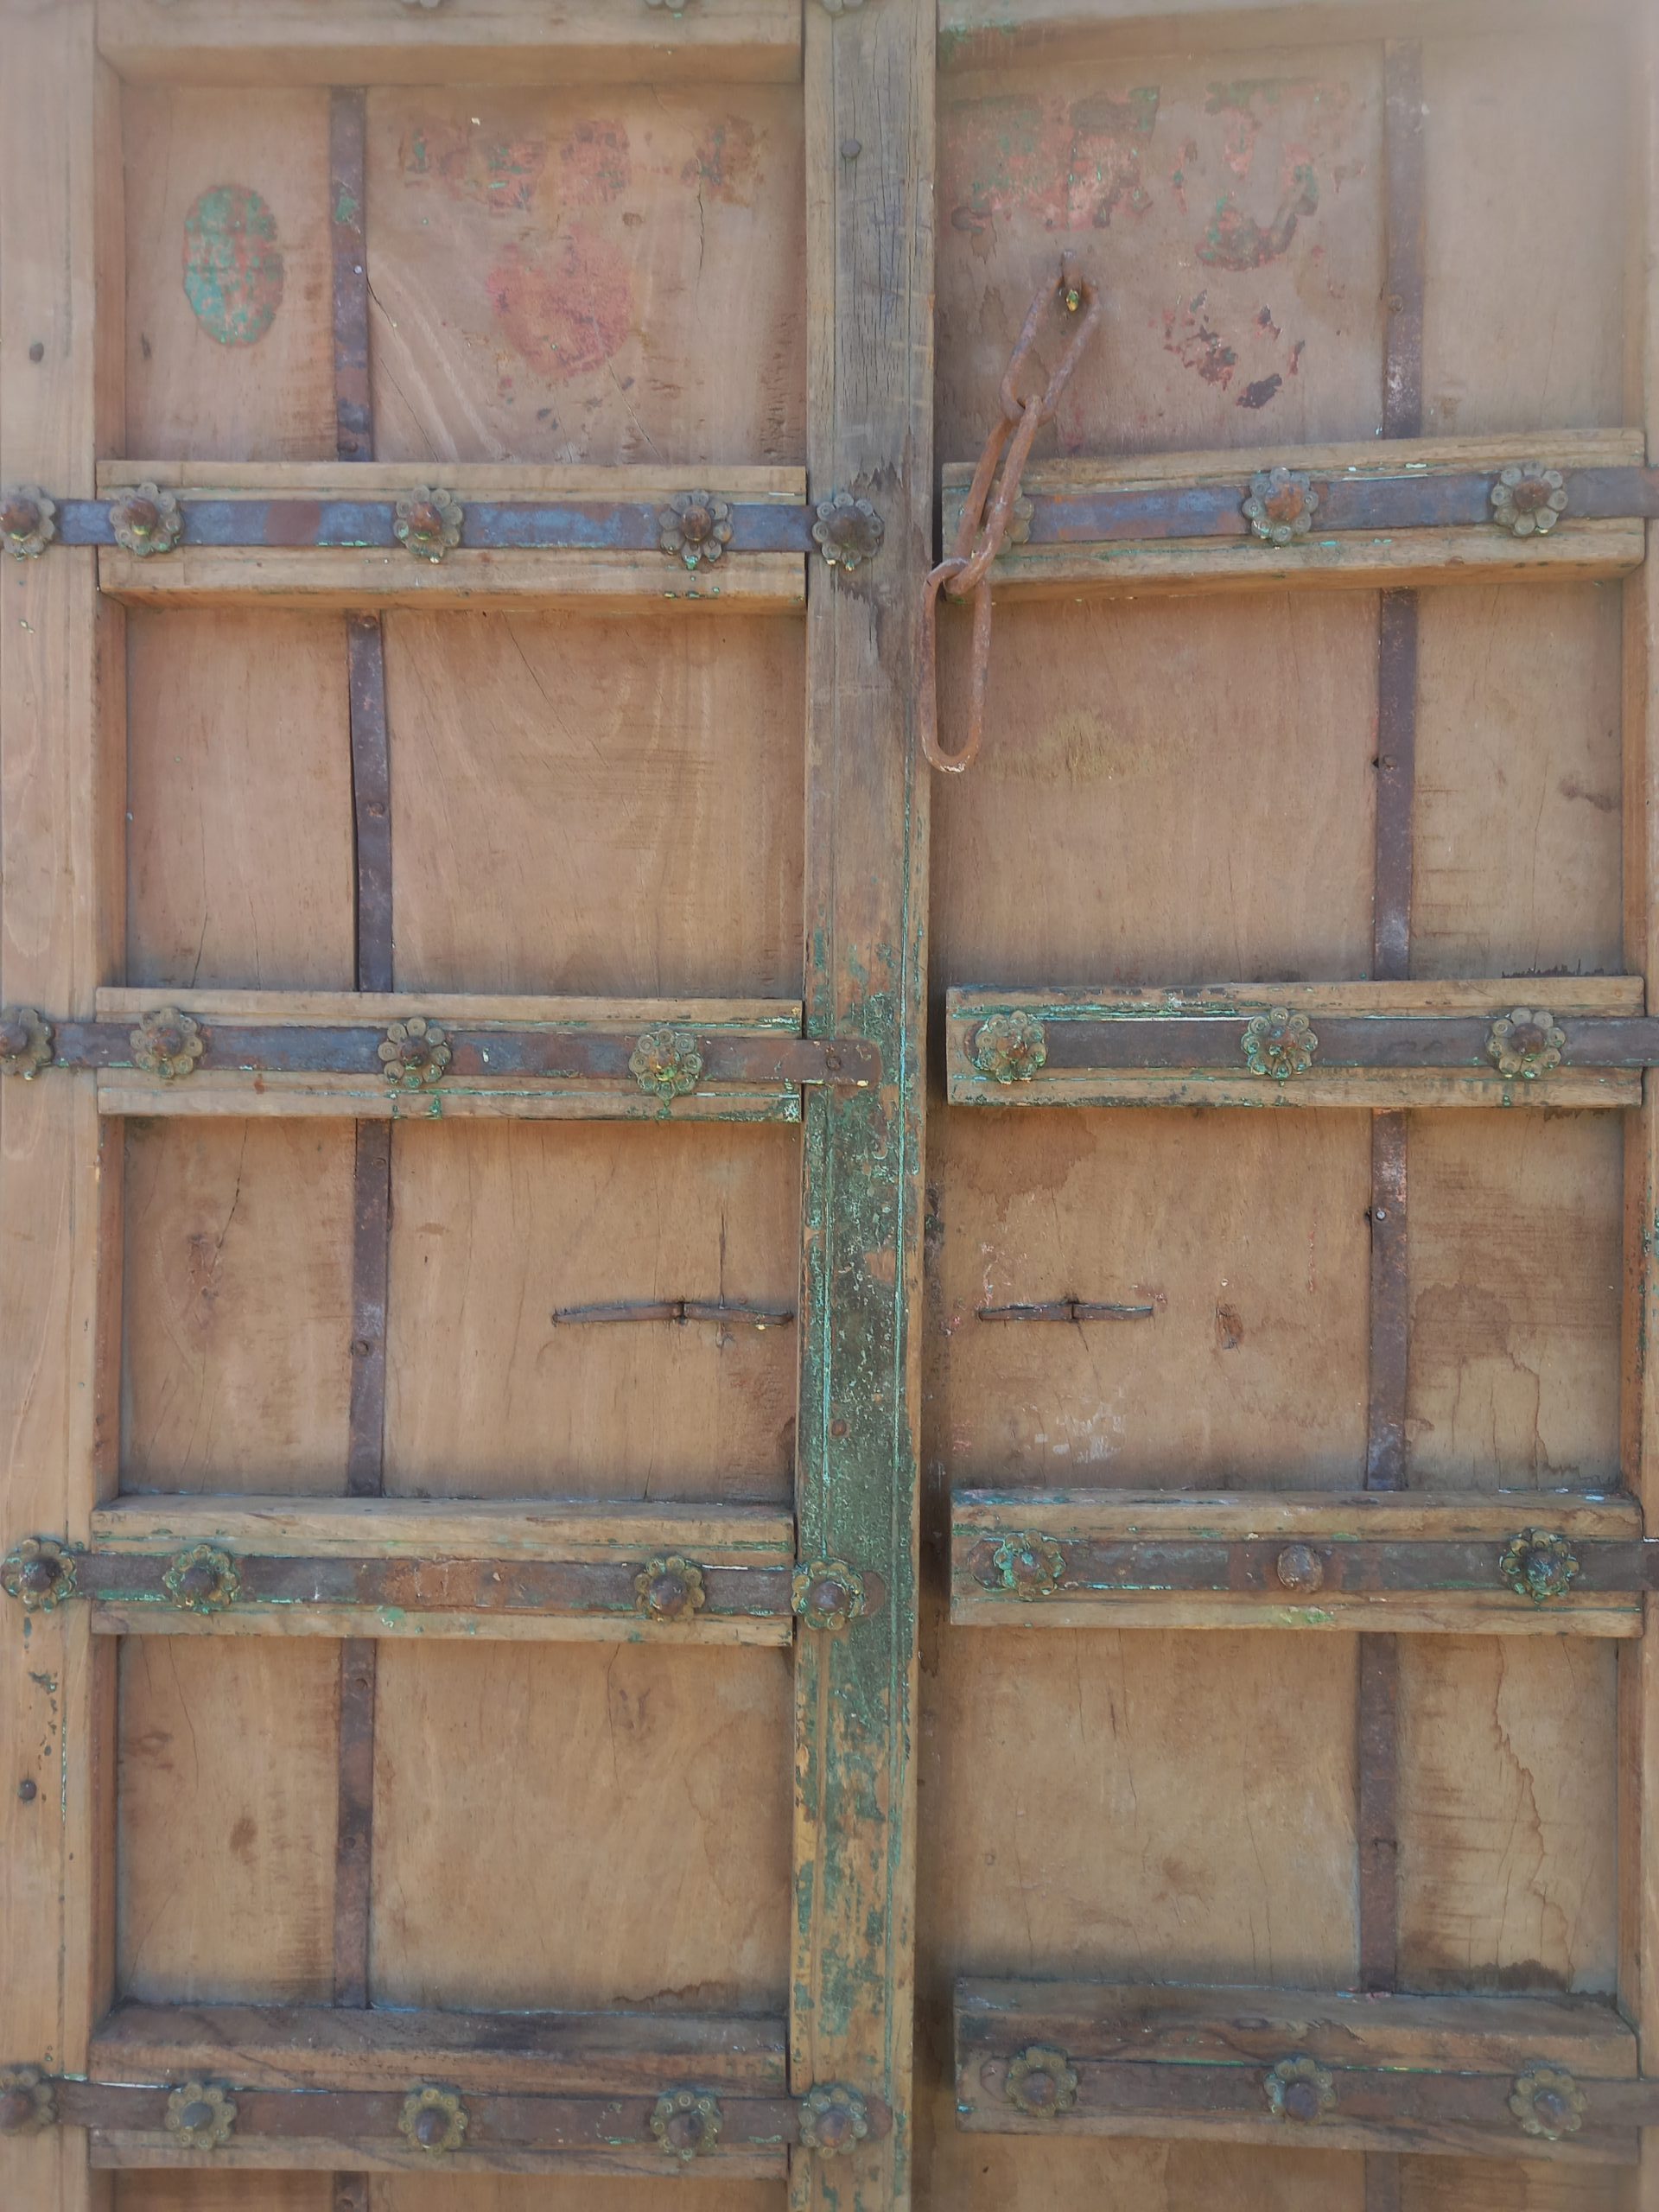 παλιές ξύλινες πόρτες ζευγάρι,σε φυσικό χρώμα ξύλου, με πράσινες λεπτομέρειες, και σδερένια ελάσματα διακοσμημένα με ροζέτες, ύψος 196 , πλάτος 115 εκ, πάχος 10 εκ